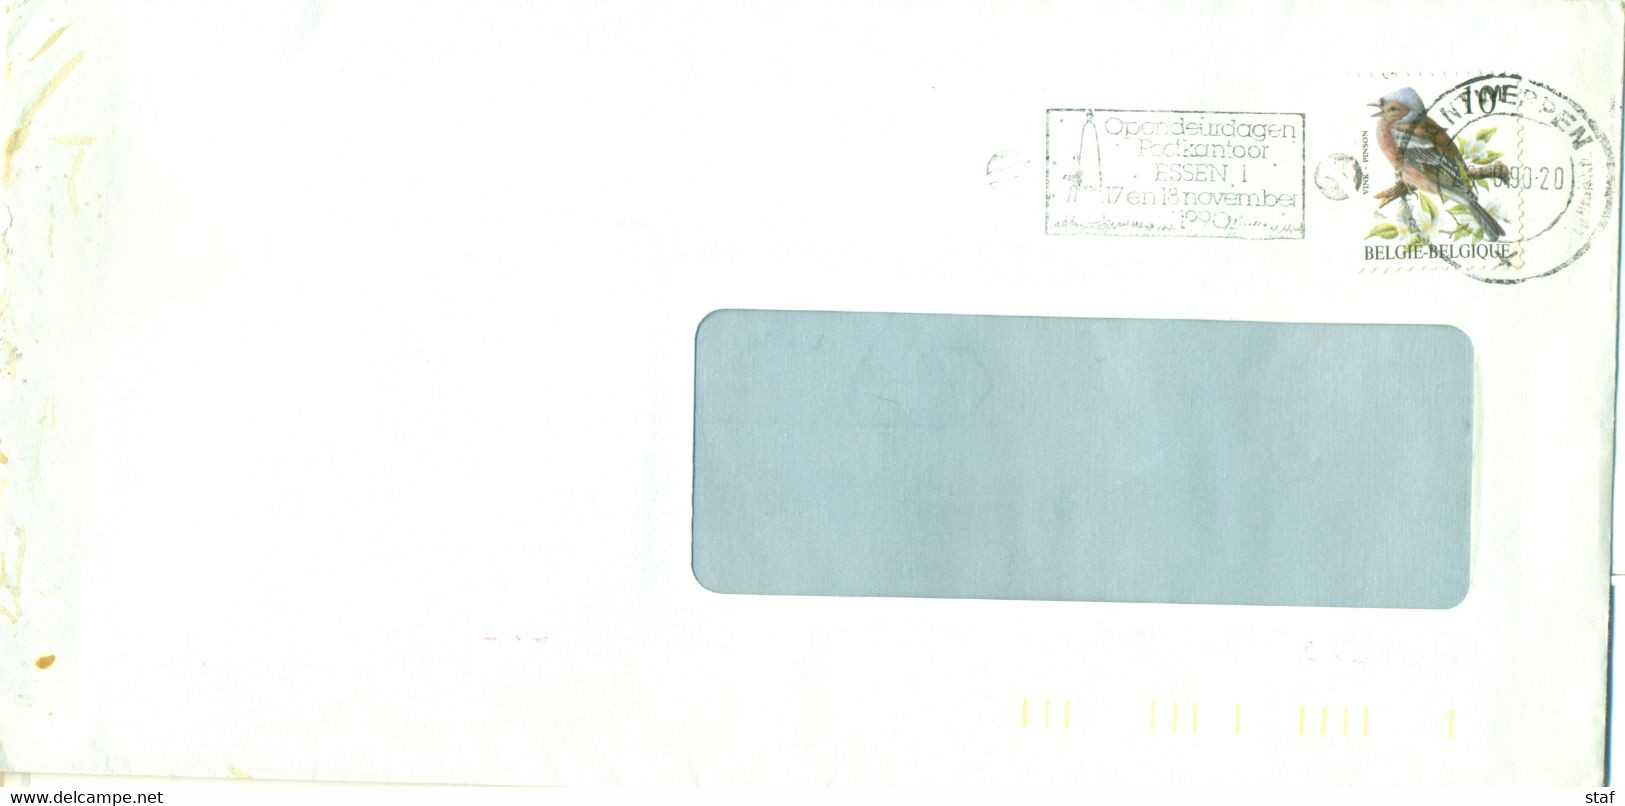 Opendeurdagen Postkantoor Essen 1 17 En 18 November 1990 - Werbestempel